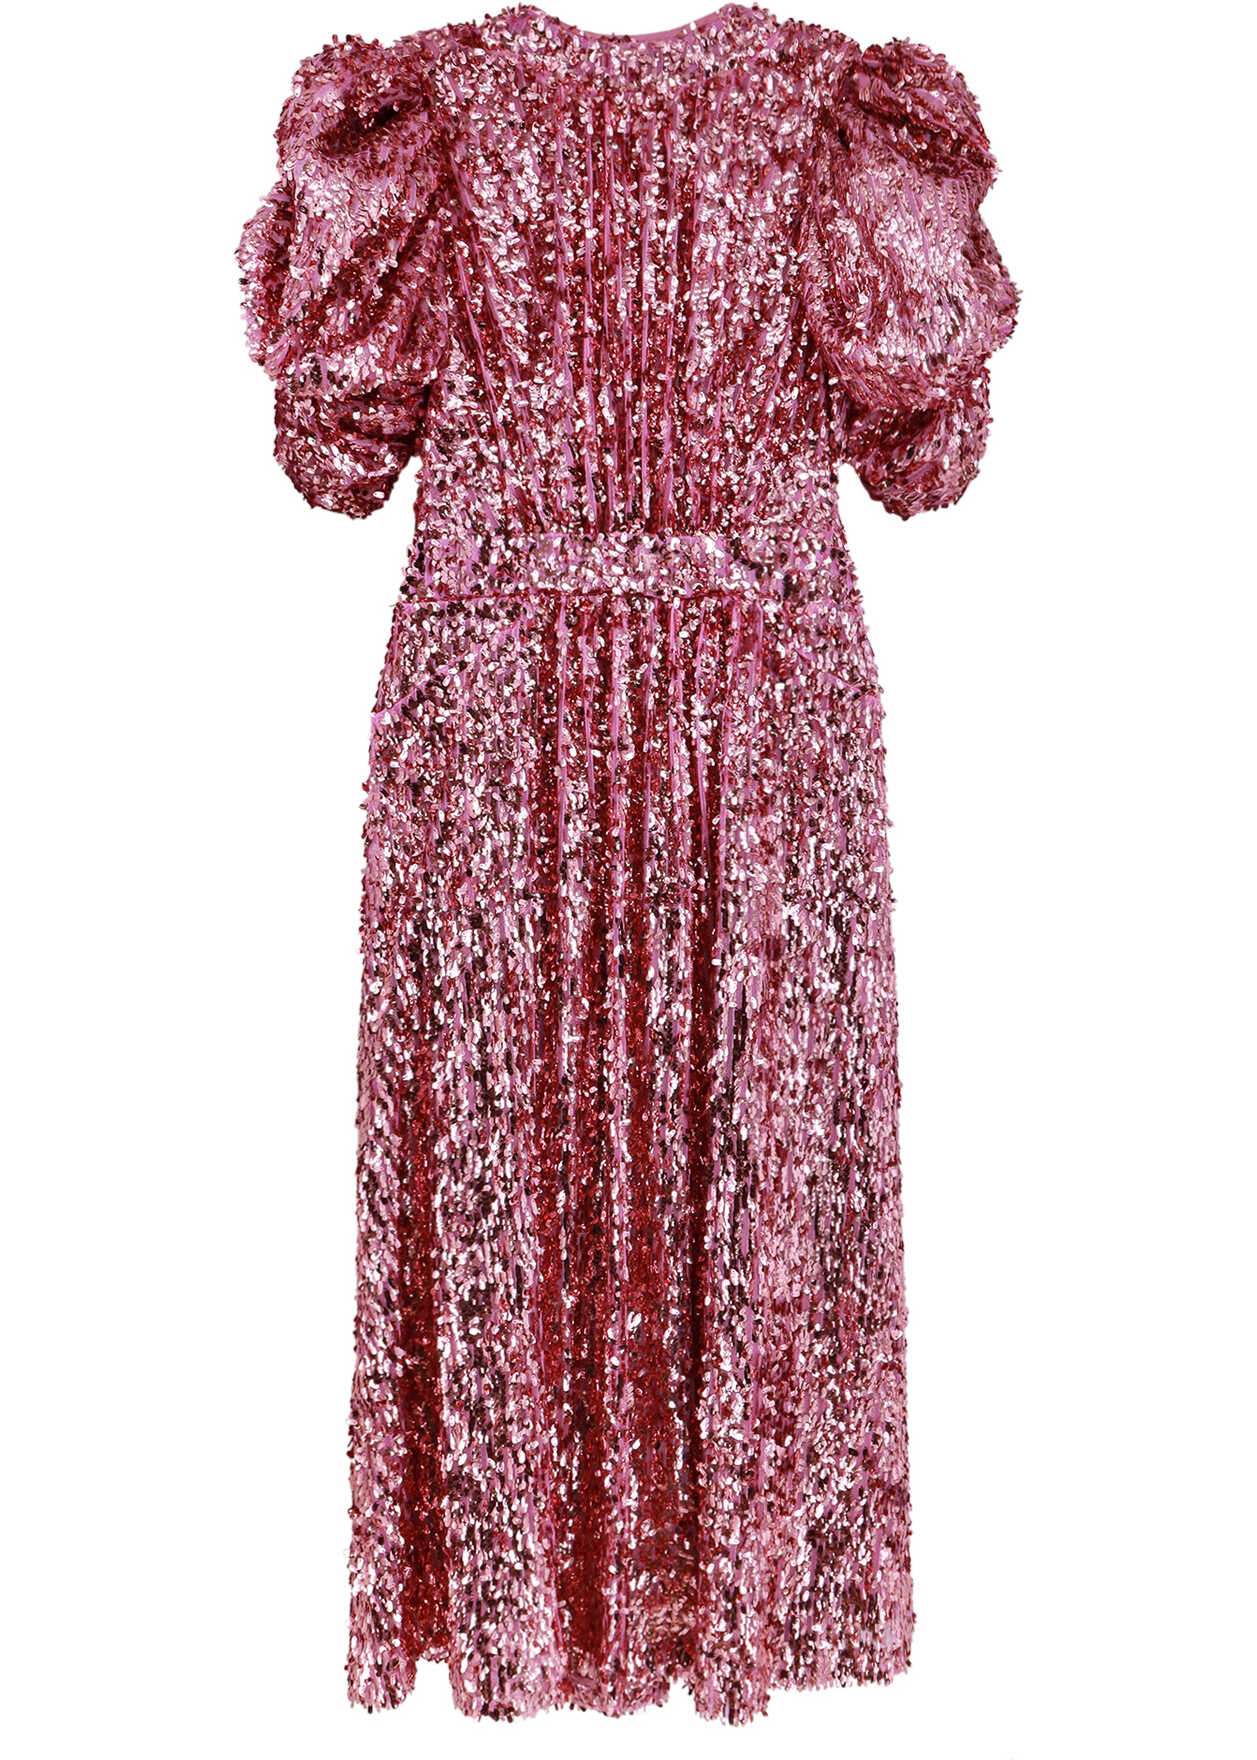 ROTATE Birger Christensen Dress Pink